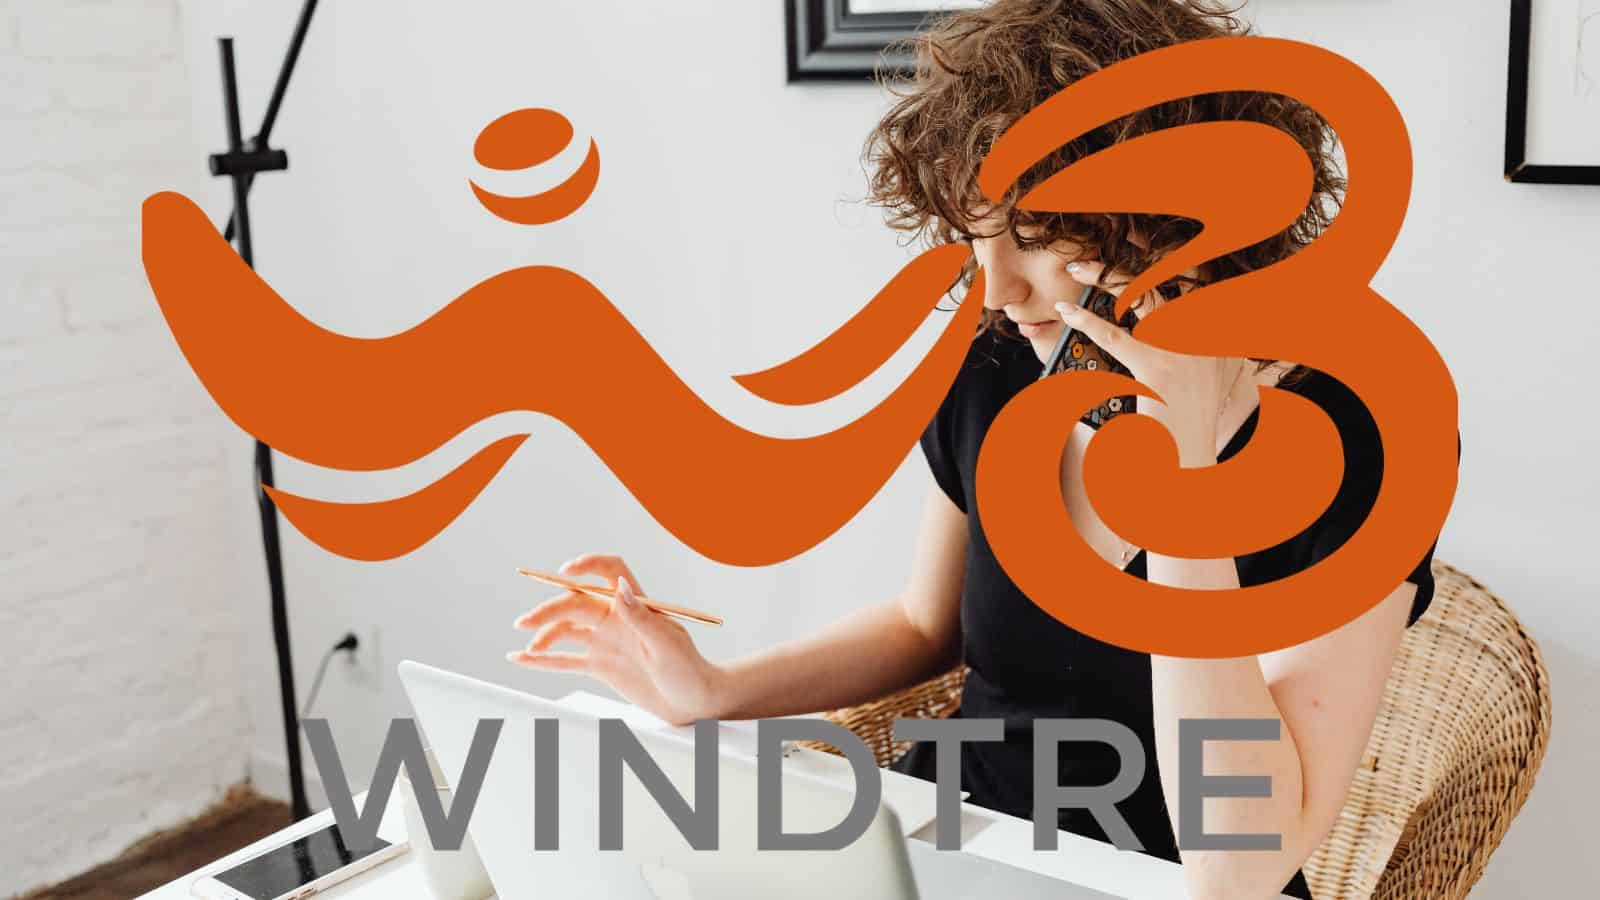 WindTre: per i nuovi utenti arriva "Go Limited Edition"